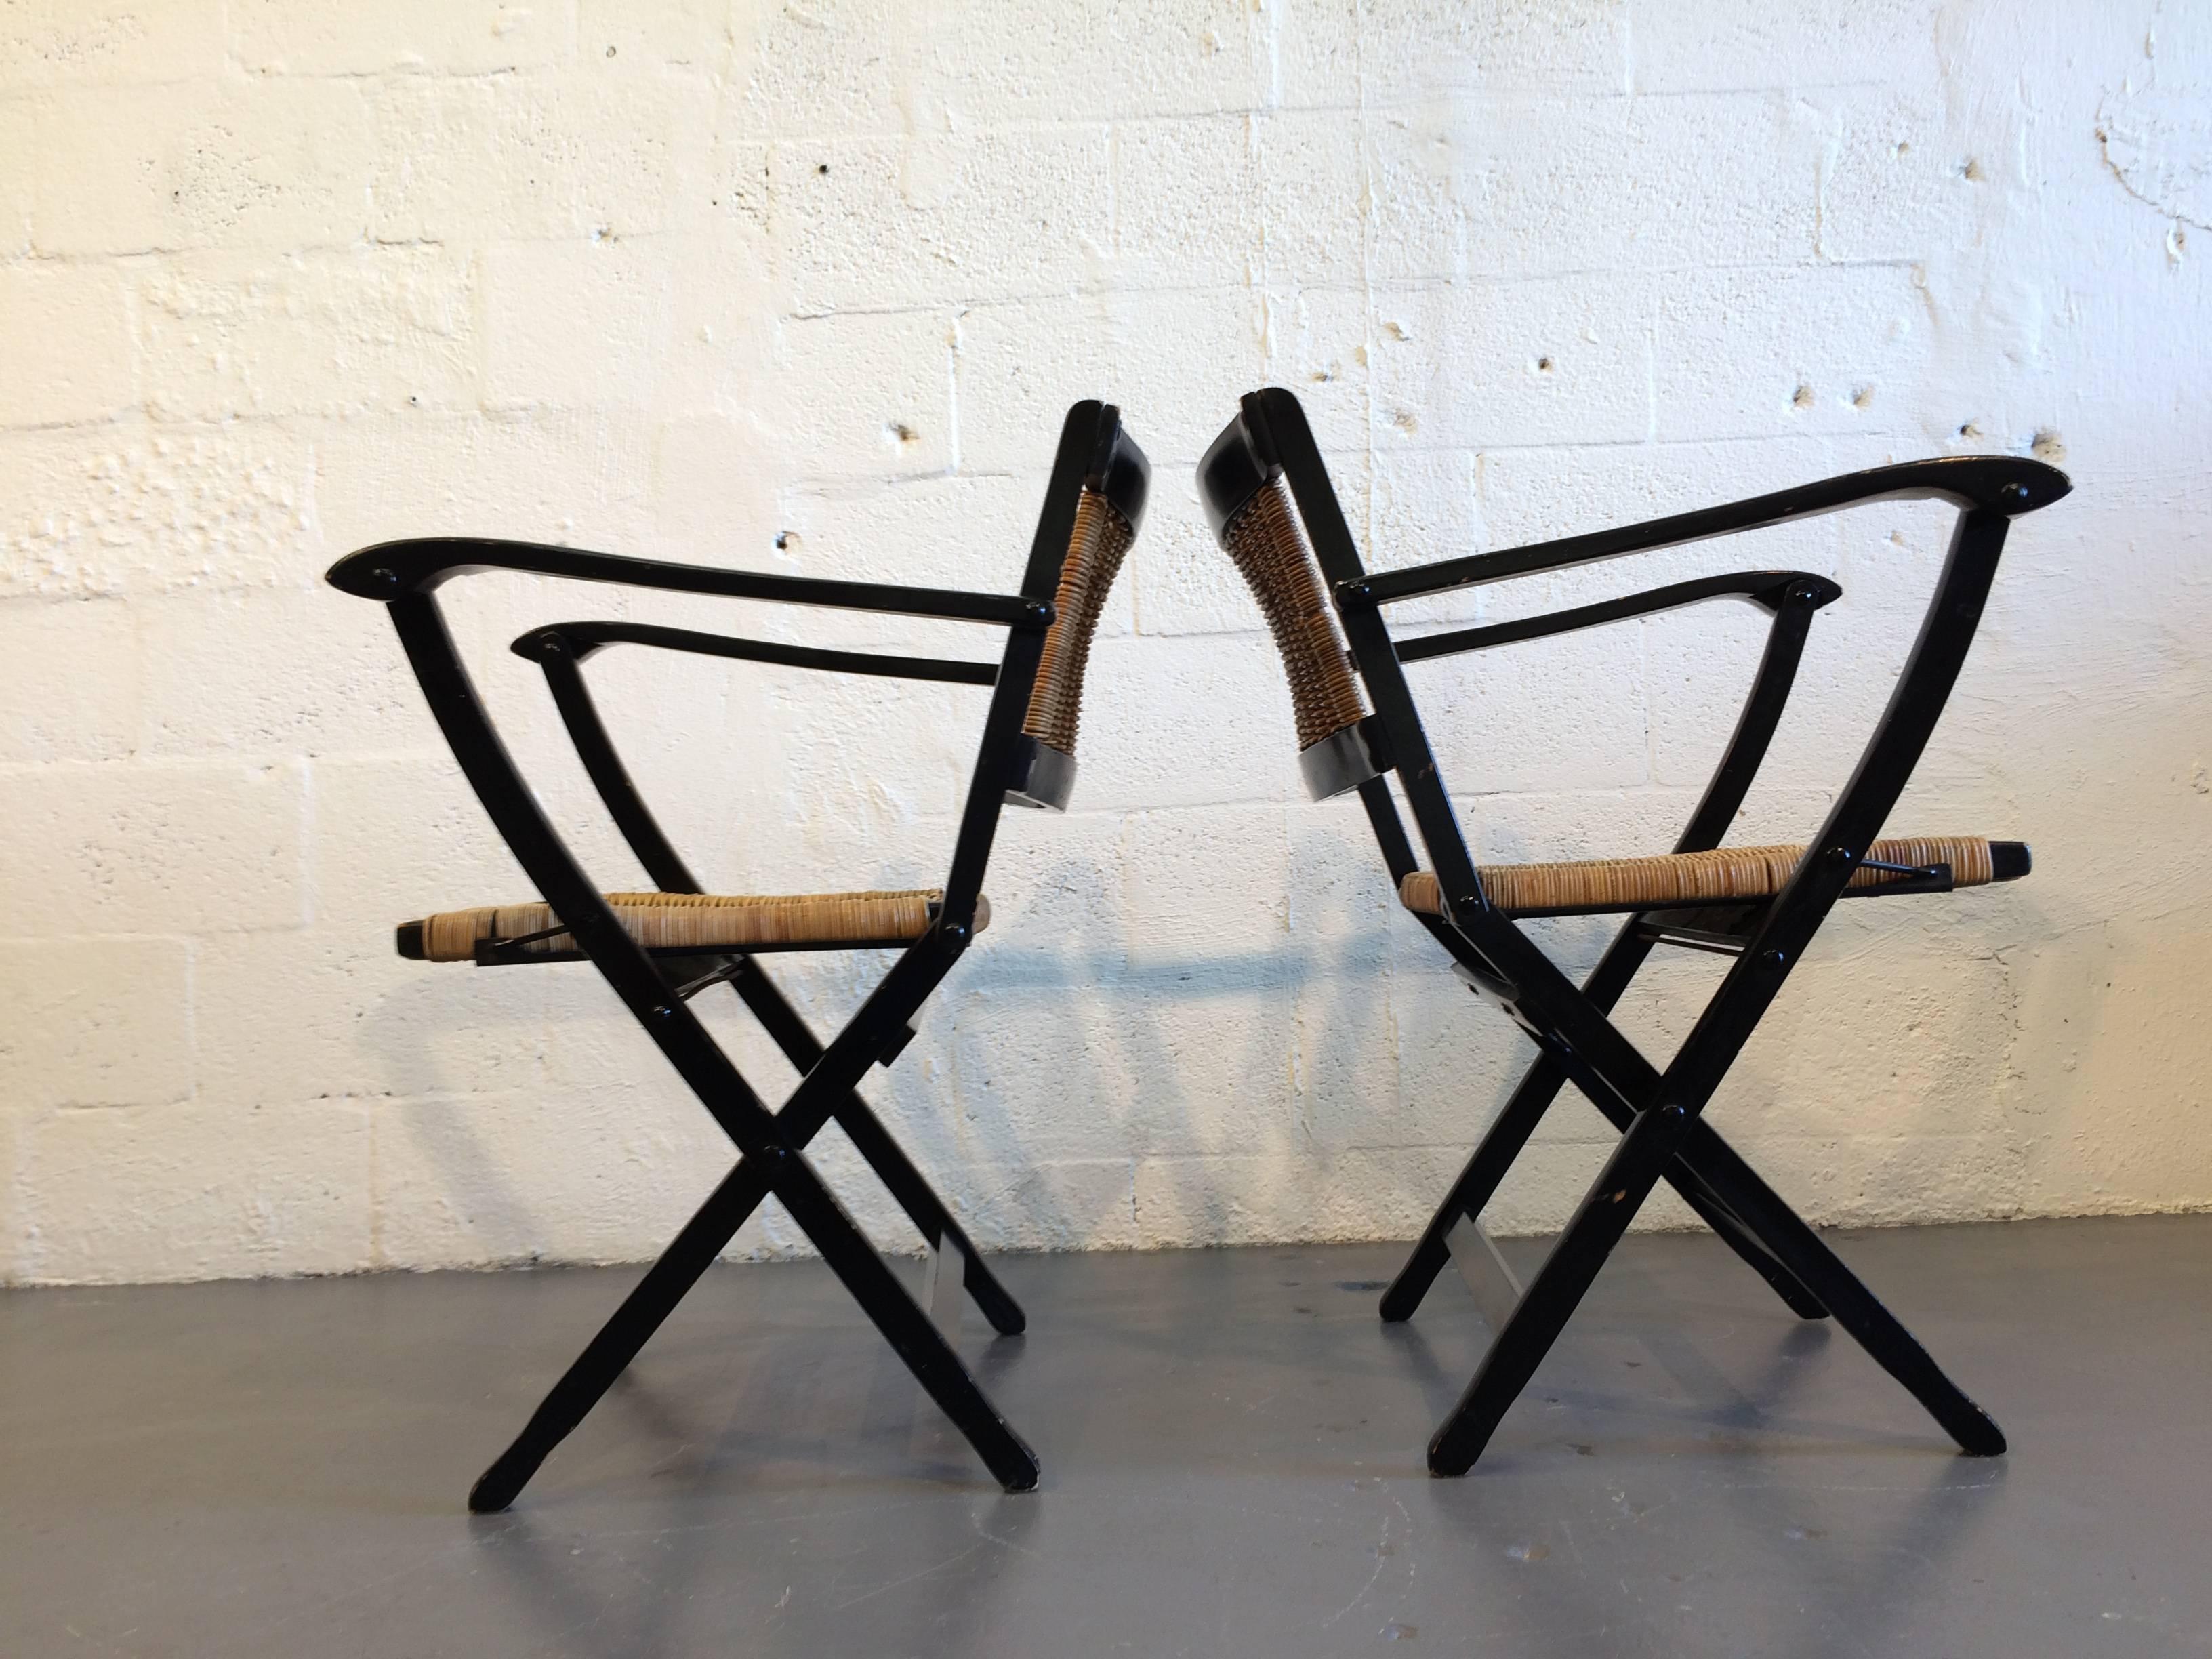 Tolles Set! Die Stühle sind klappbar. Schwarz lackiertes Holz mit Sitz und Rückenlehne aus Korbgeflecht.